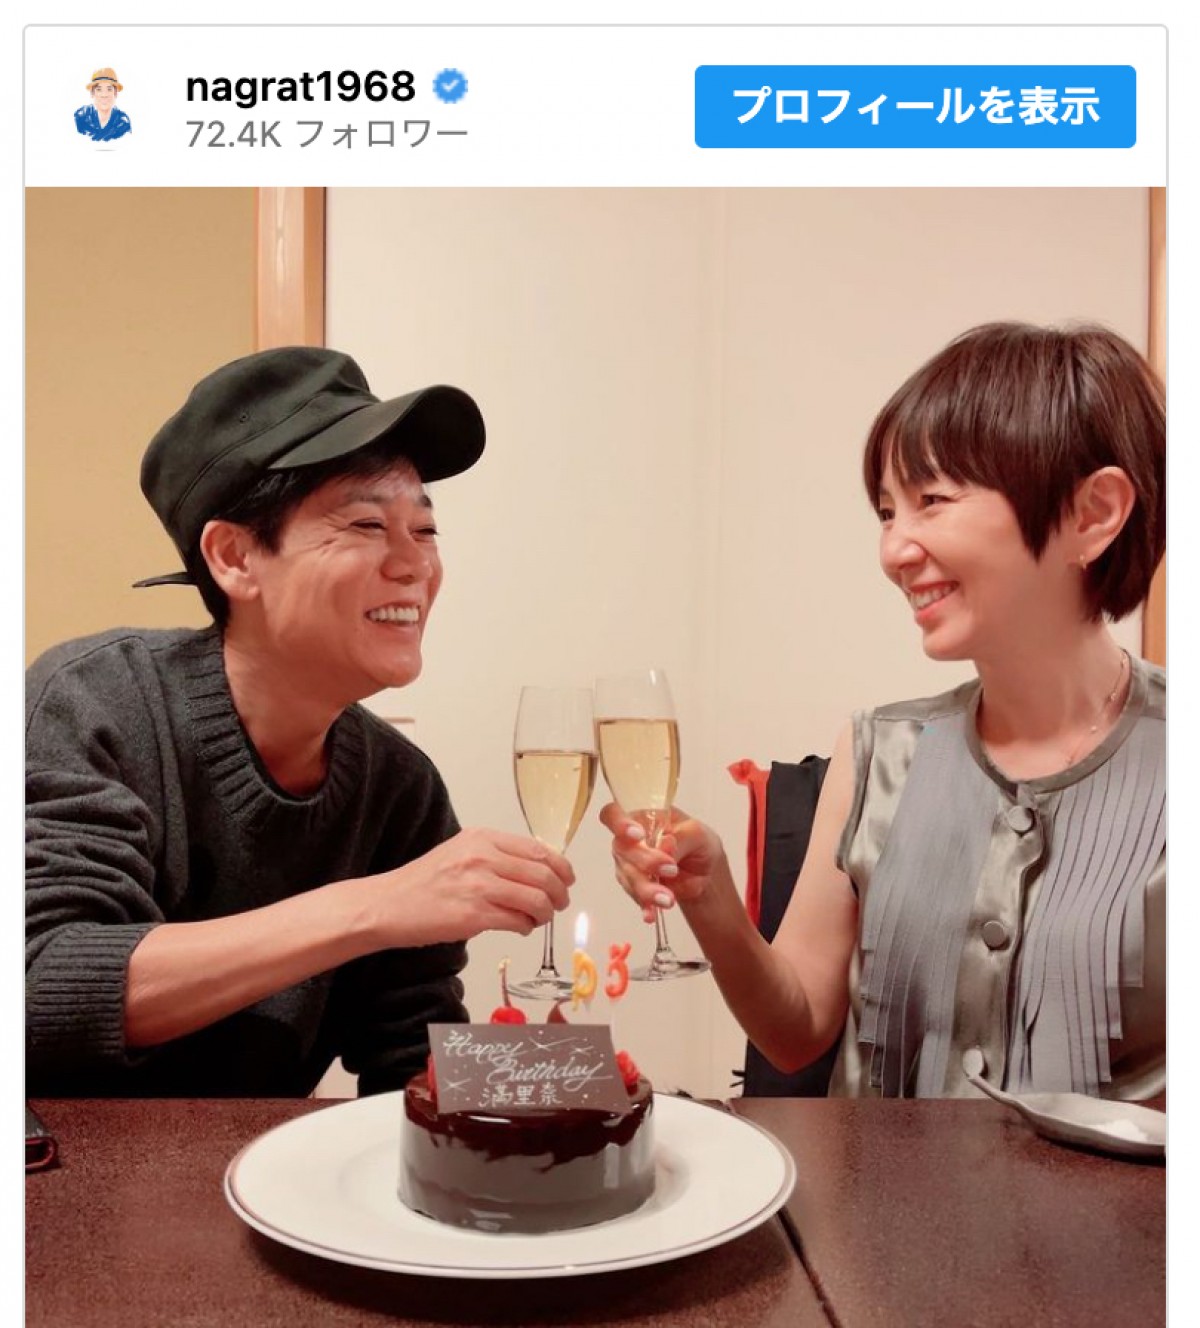 ネプチューン名倉、妻・渡辺満里奈の53歳の誕生日を祝福「素敵な2人」